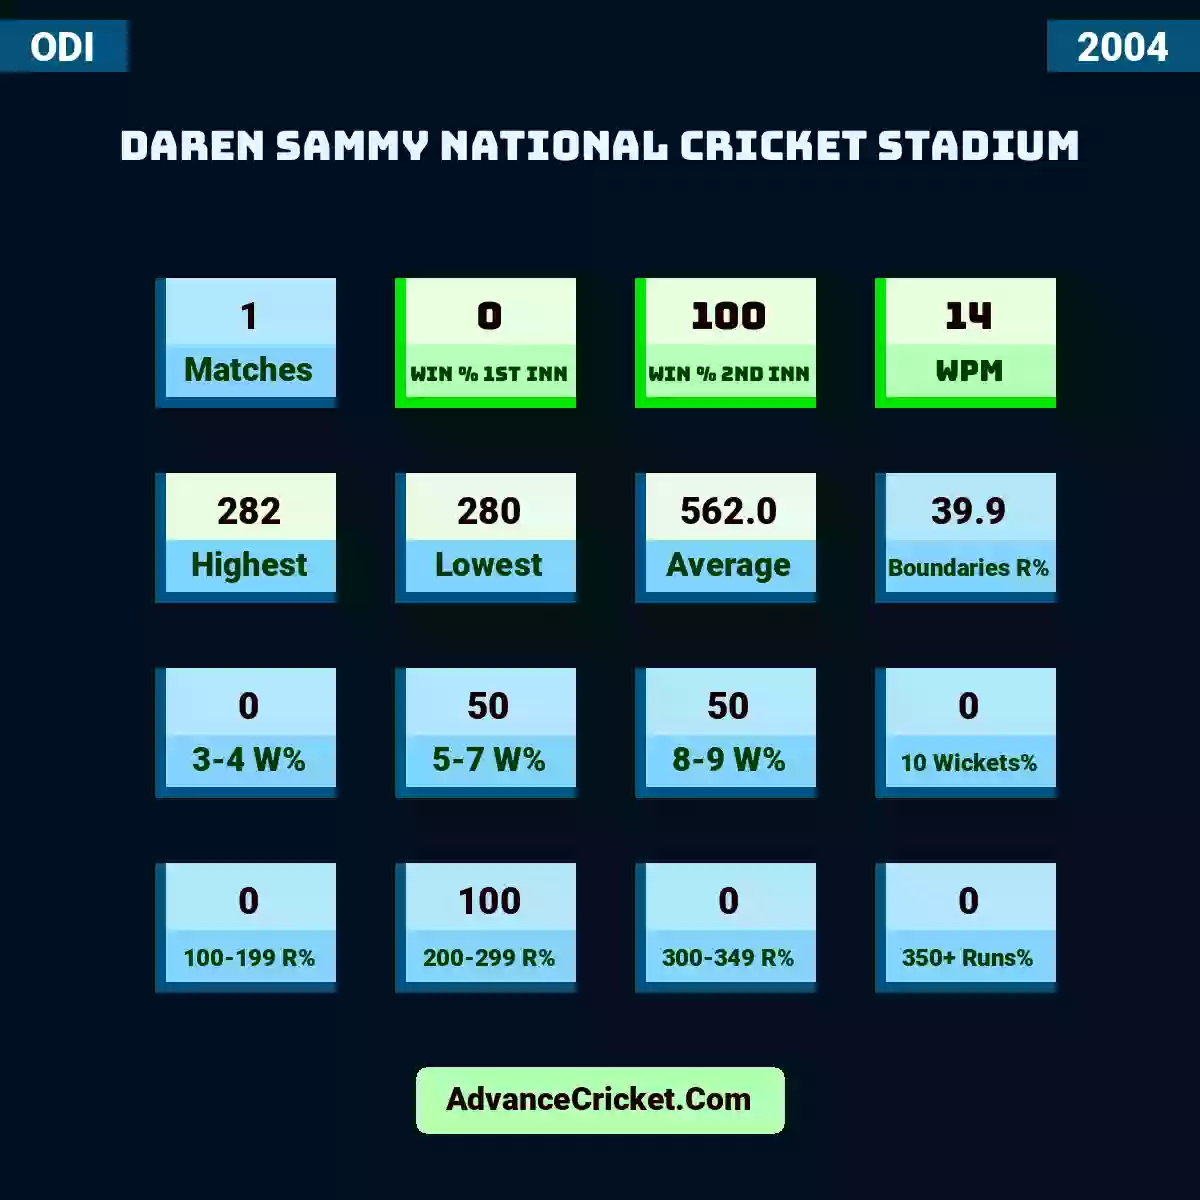 Image showing Daren Sammy National Cricket Stadium with Matches: 1, Win % 1st Inn: 0, Win % 2nd Inn: 100, WPM: 14, Highest: 282, Lowest: 280, Average: 562.0, Boundaries R%: 39.9, 3-4 W%: 0, 5-7 W%: 50, 8-9 W%: 50, 10 Wickets%: 0, 100-199 R%: 0, 200-299 R%: 100, 300-349 R%: 0, 350+ Runs%: 0.